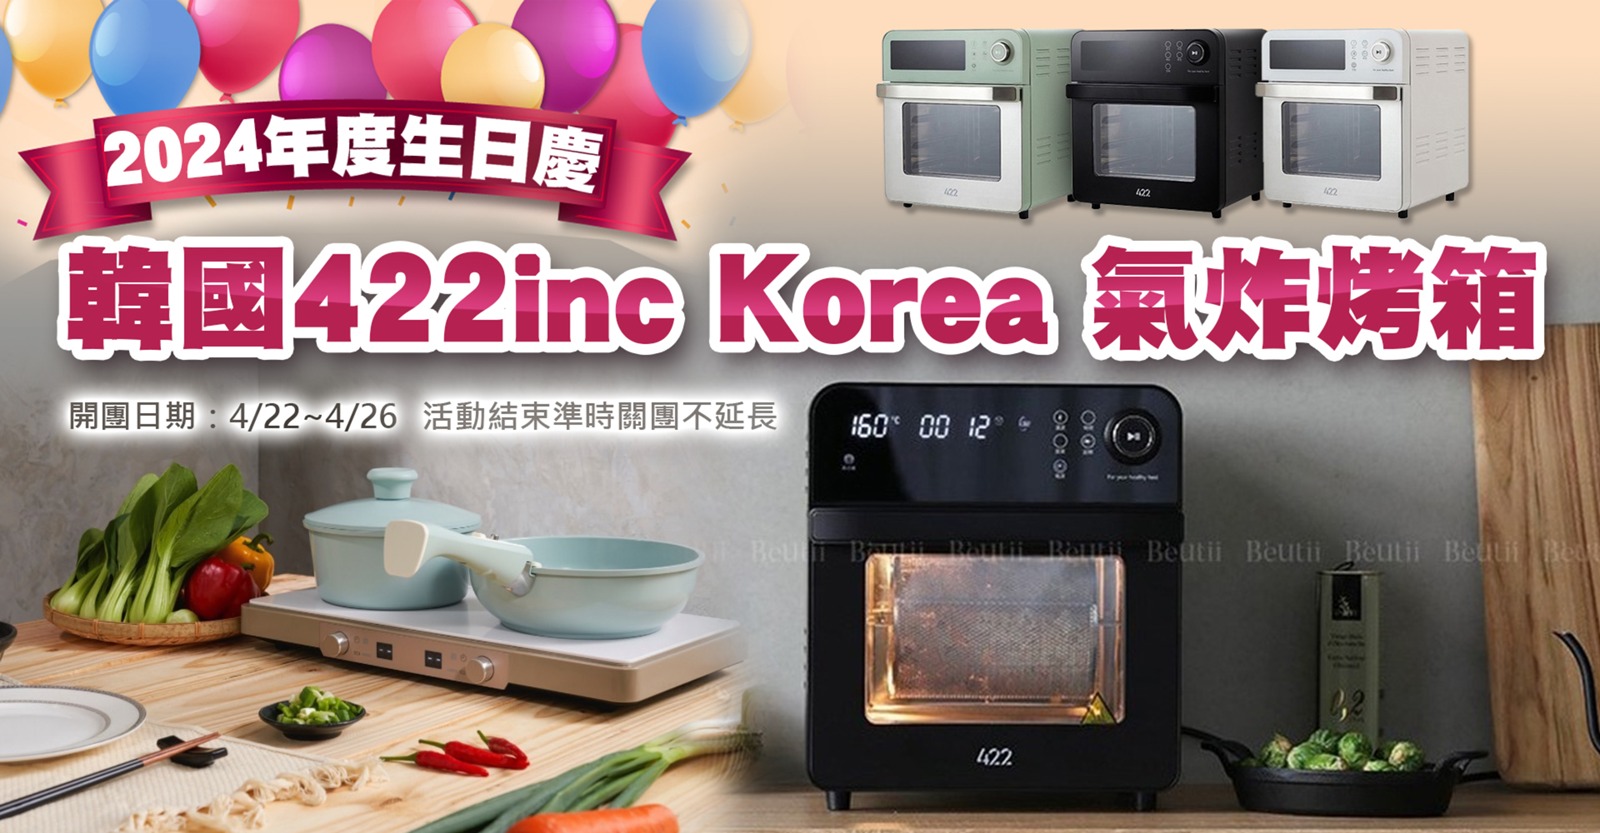 韓國422inc Korea 氣炸烤箱2024年度生日慶